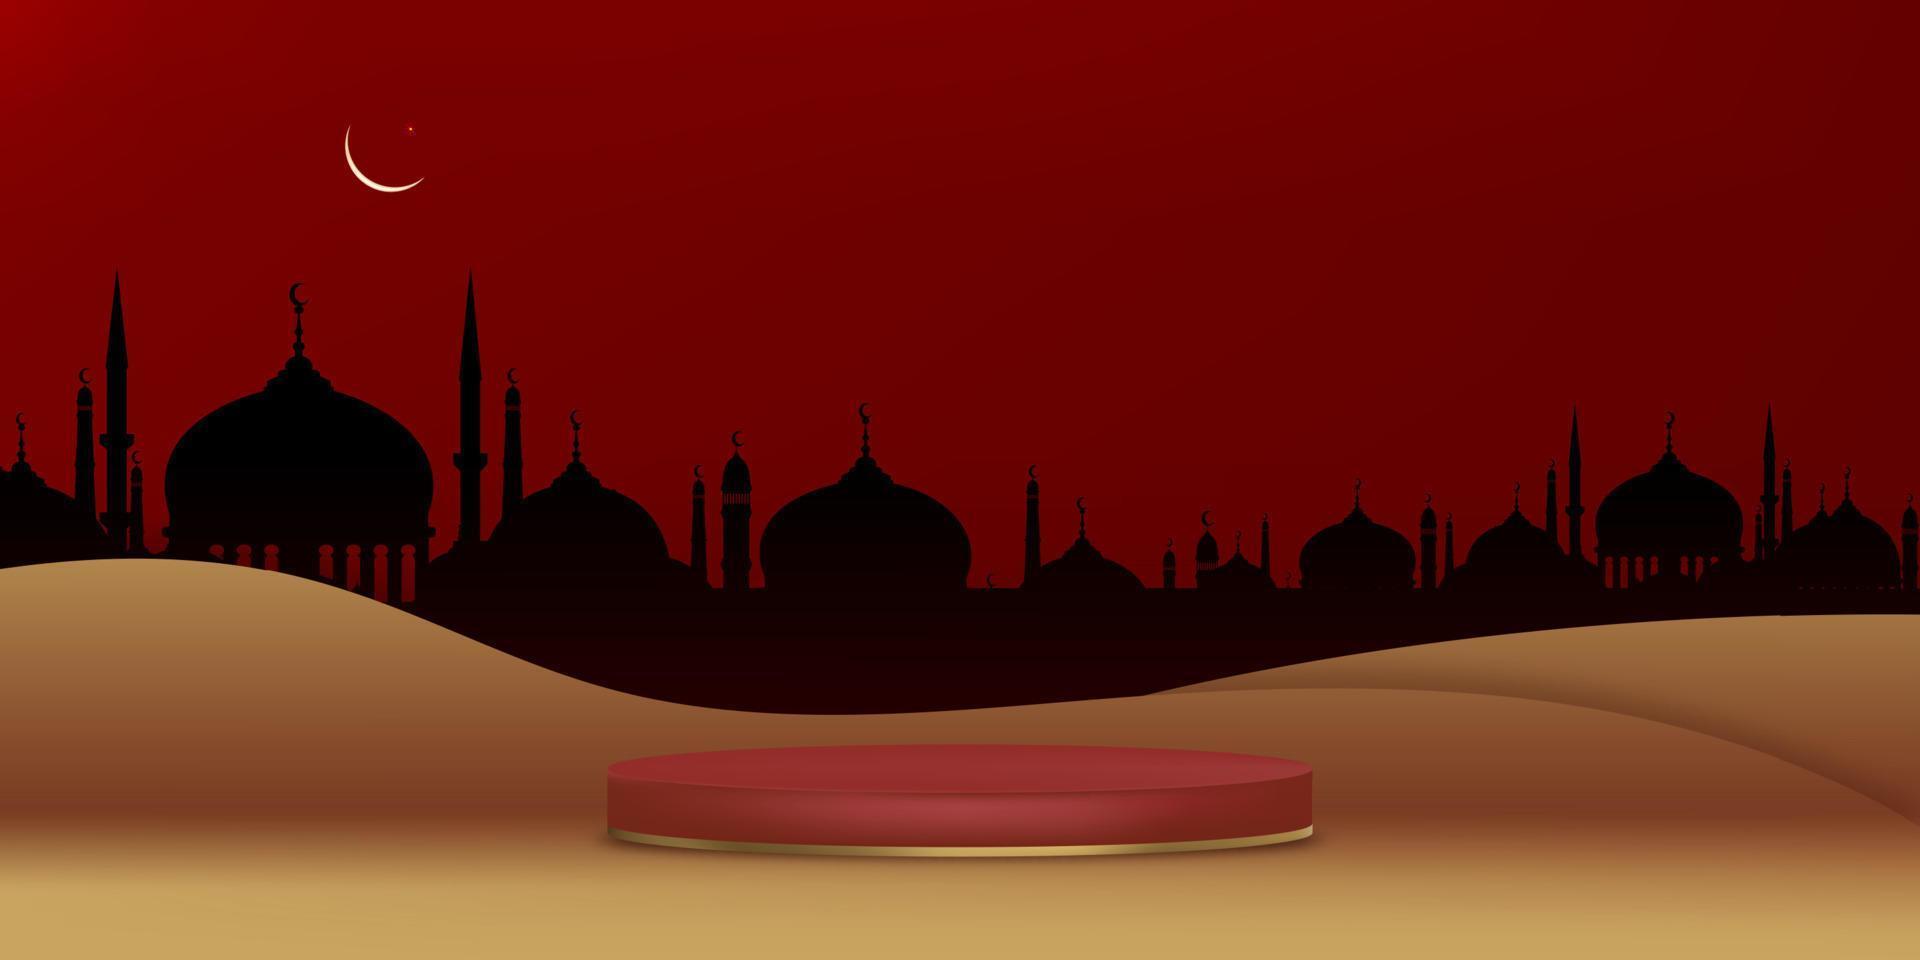 fond de carte de voeux eid mubarak avec silhouette de mosquée croissant de lune et étoile sur fond de mur découpé en papier rouge. fond de vecteur de religion musulmane symbolique pour eid al fitr ramadan kareem